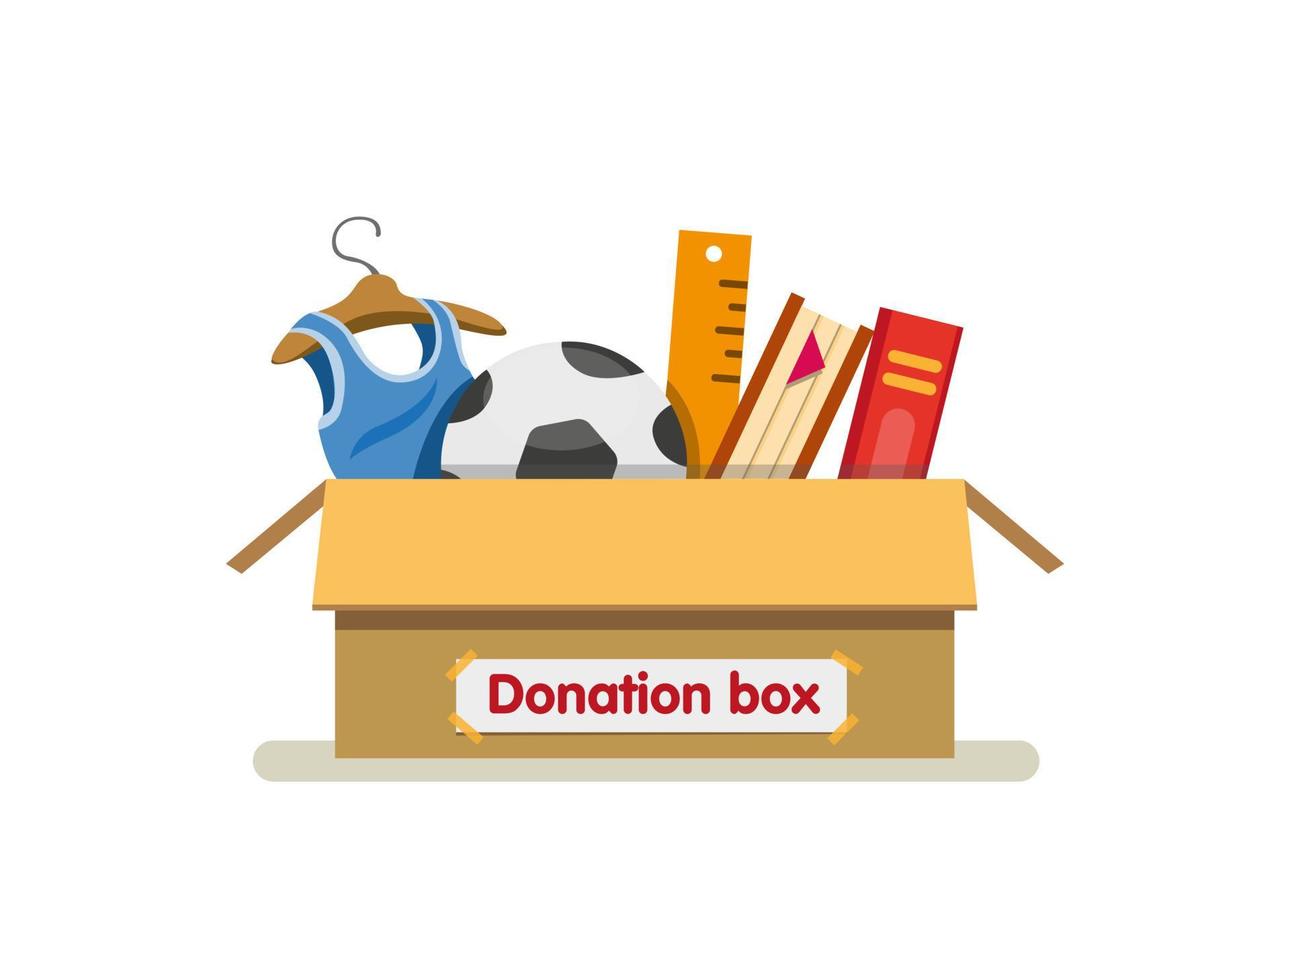 livres, jouets et vêtements dans une boîte de dons en carton prêts à envoyer pour la charité dans un vecteur d'illustration plat de dessin animé isolé sur fond blanc